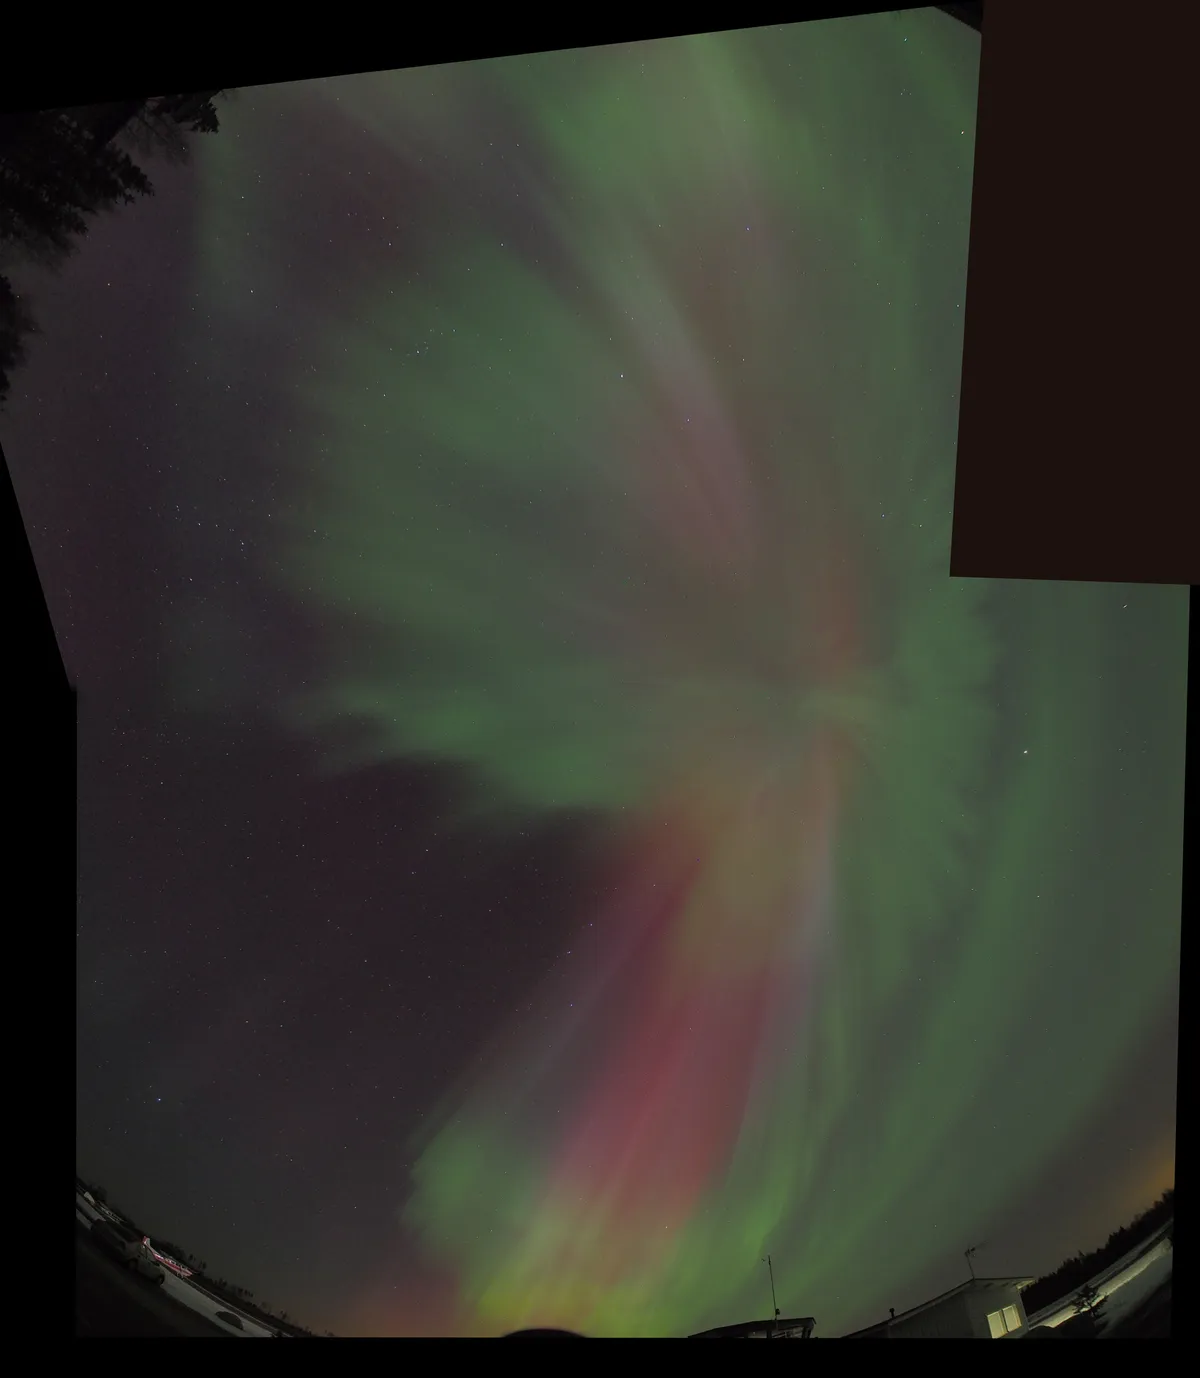 Aurora borealis full sky eruption #2 by Olli Reijonen, Vesivehmaa Airfield, Asikkala, Finland.